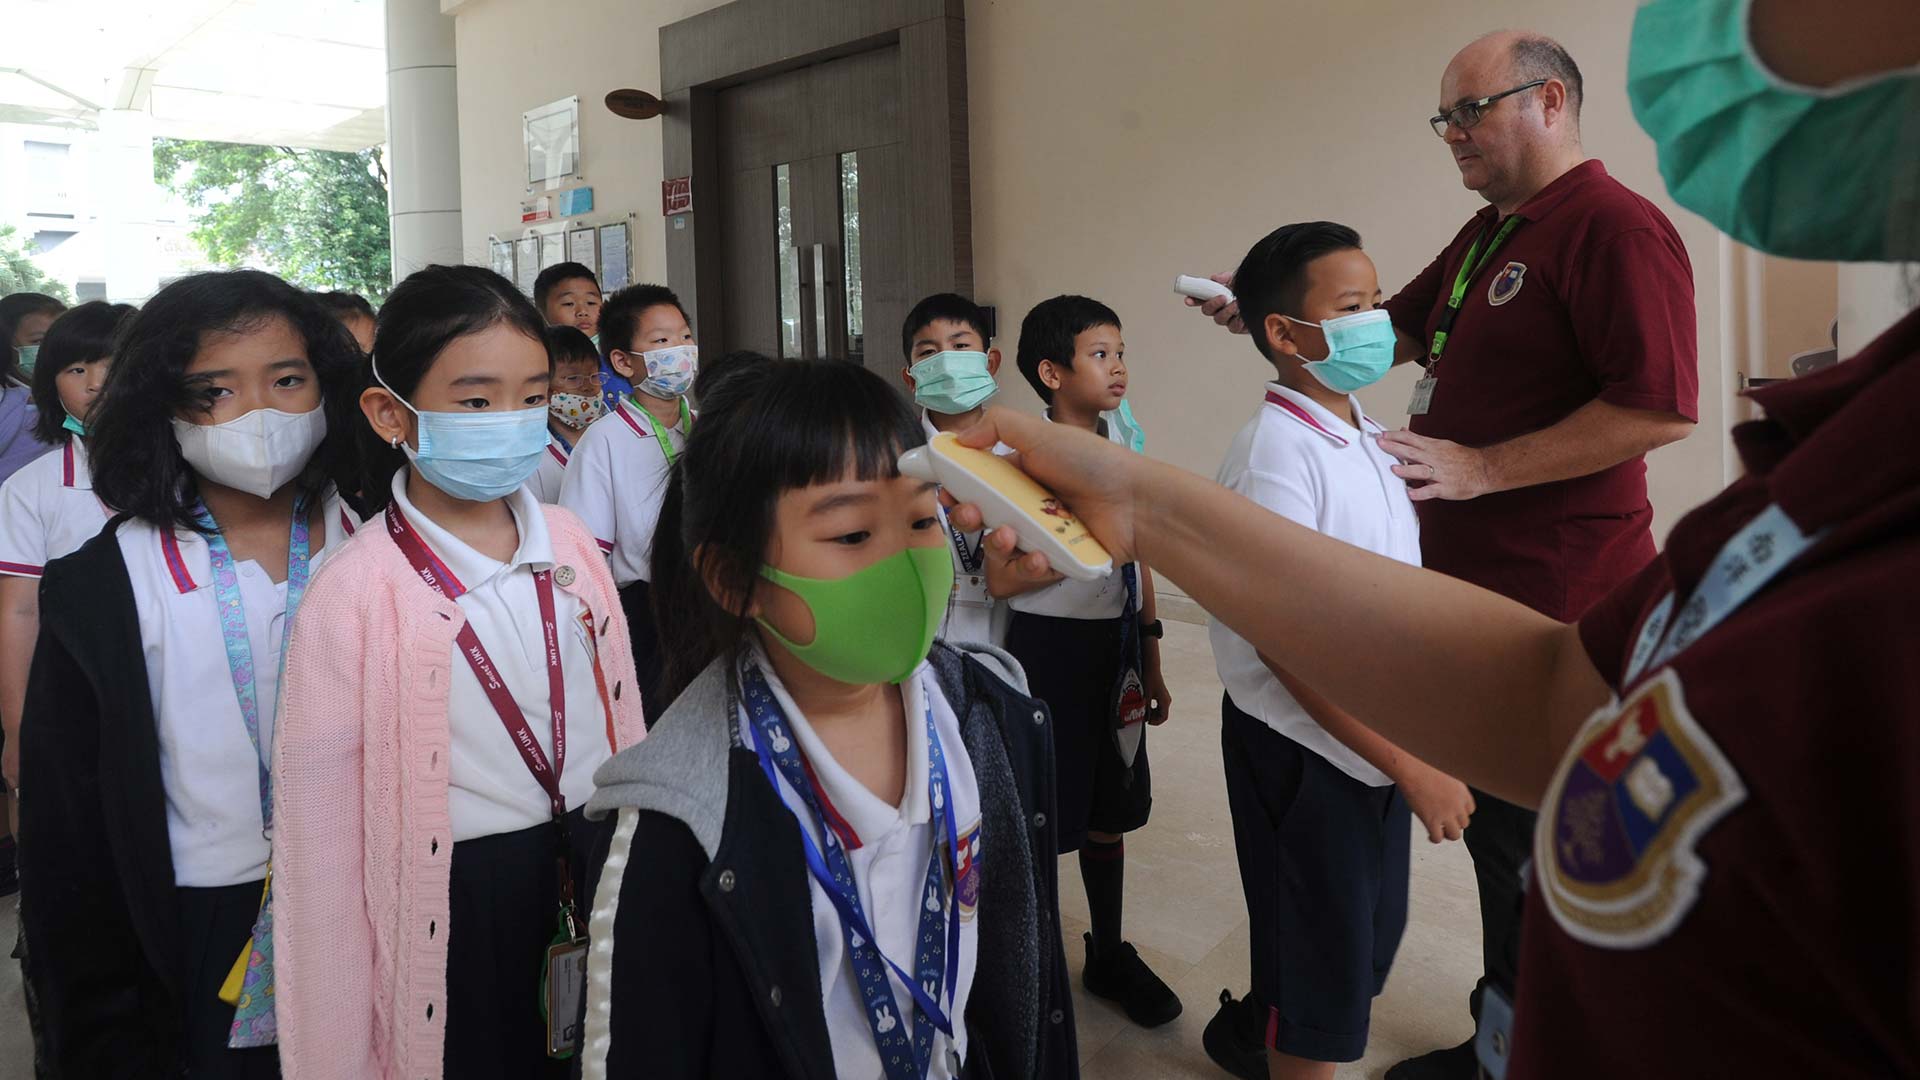 El coronavirus disminuye en China, pero el mundo entra en «territorio desconocido»